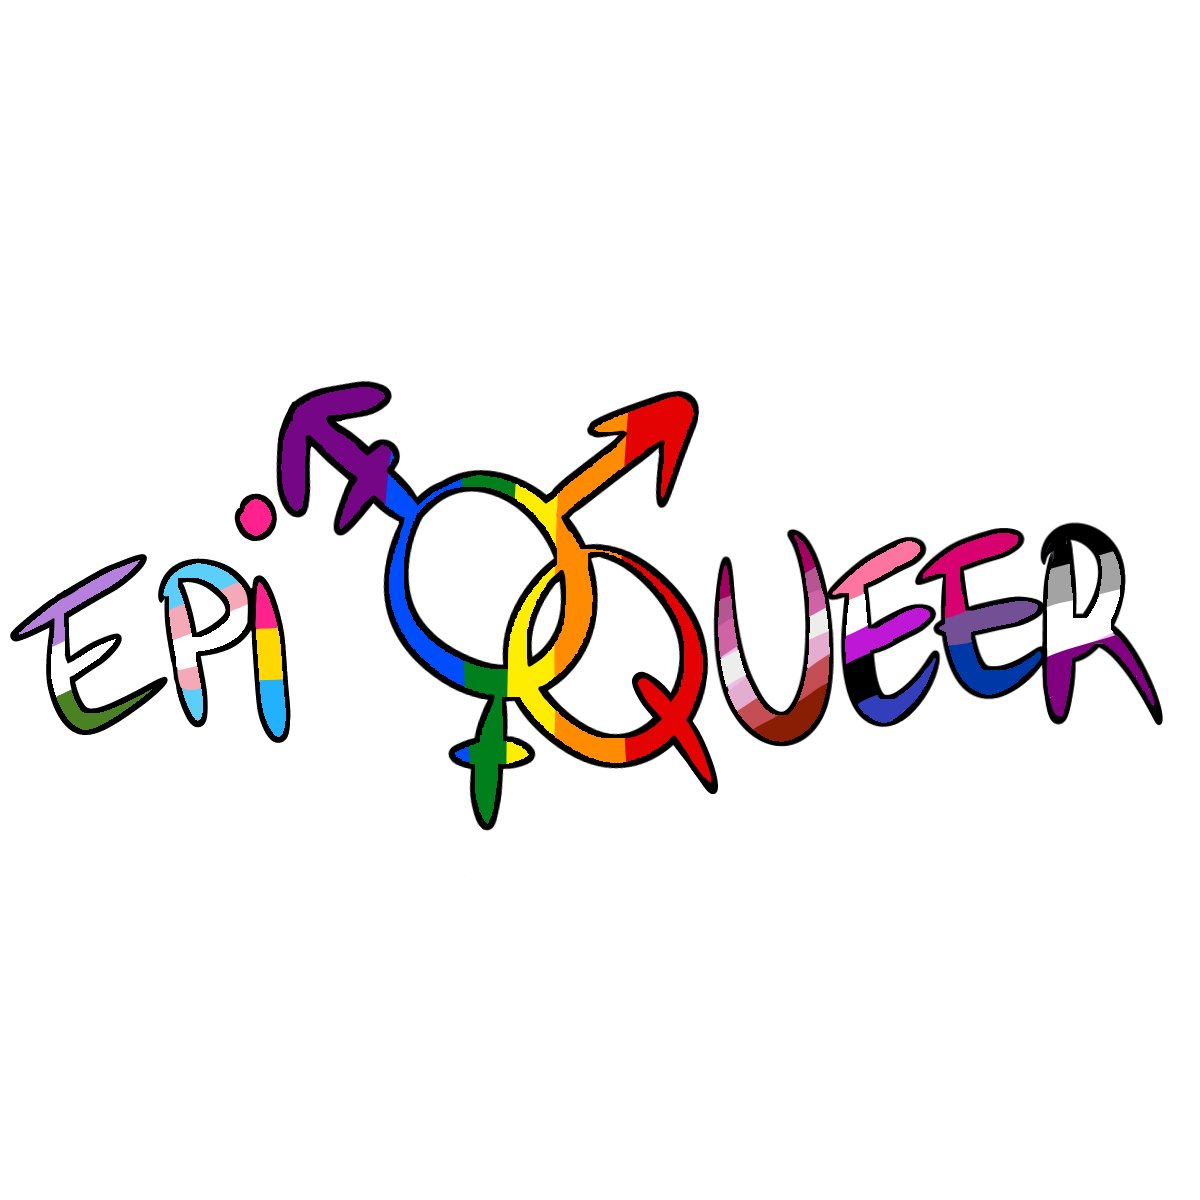 Epiqueer est l'association LGBT+ d'Epita et d'Epitech. 
Nous avons pour but d'aider et de sensibiliser les étudiant.e.s aux problématiques LGBT+